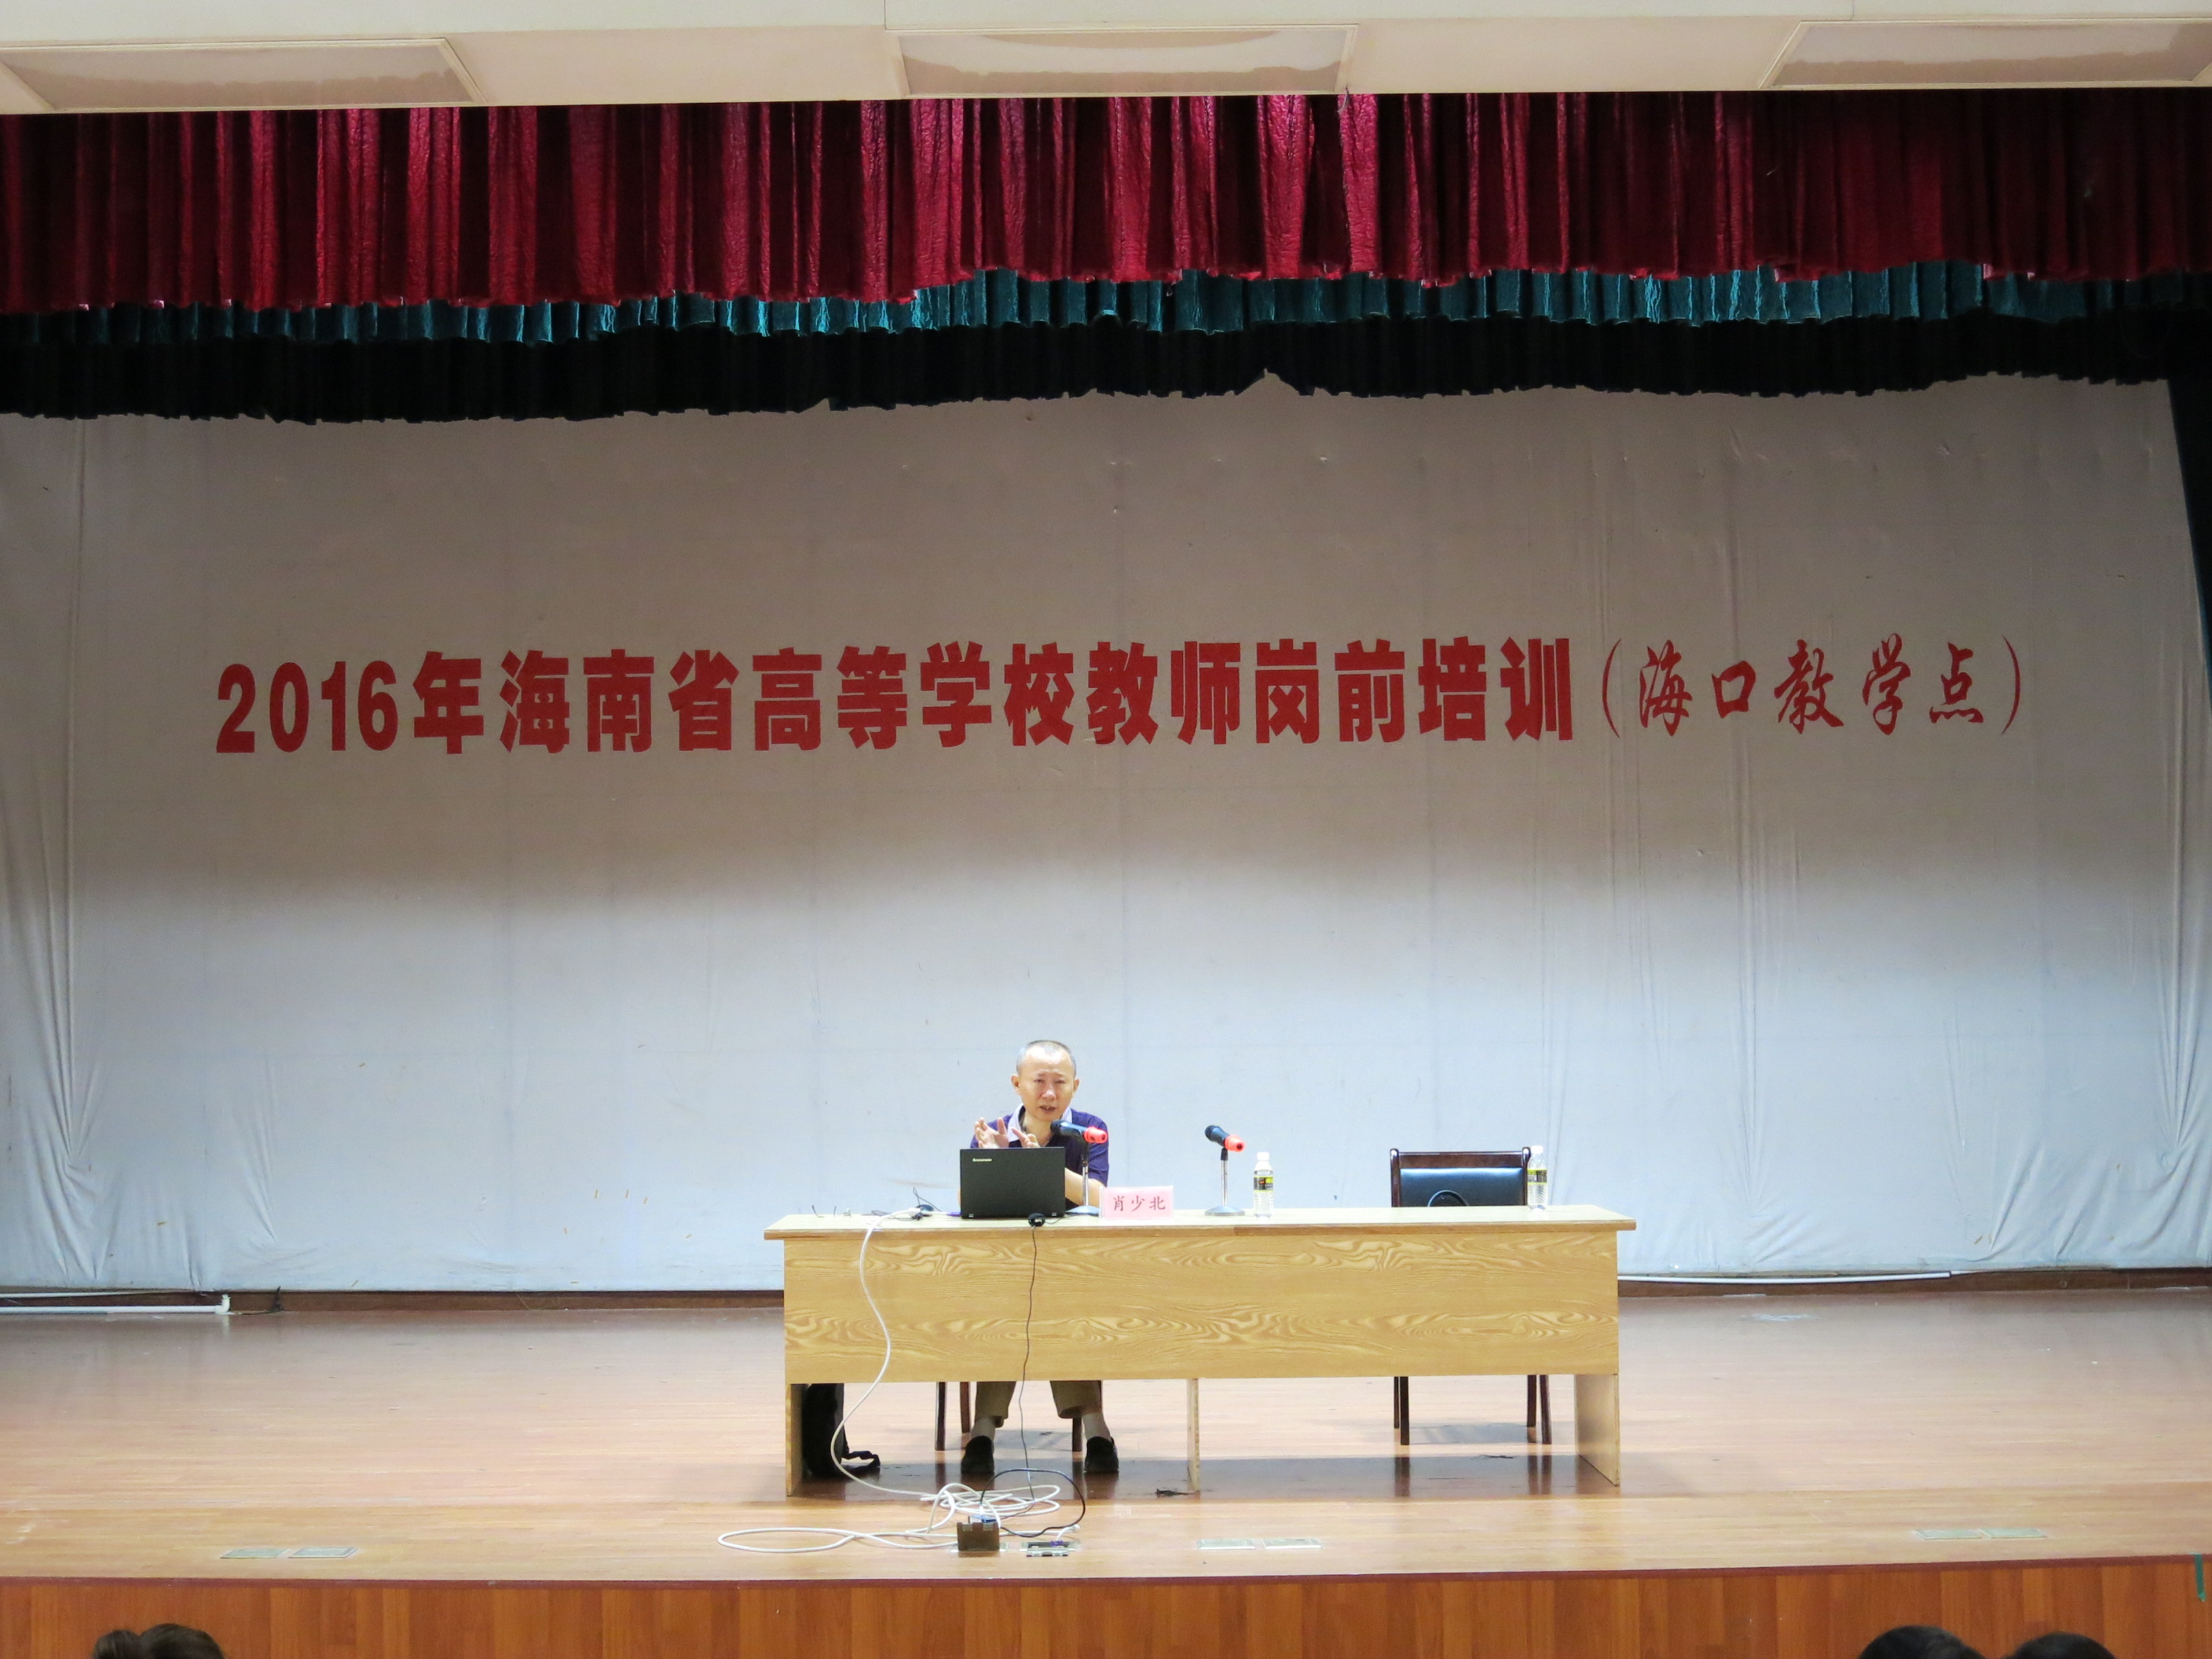 2016年海南省高校教师岗前培训工作正式启动